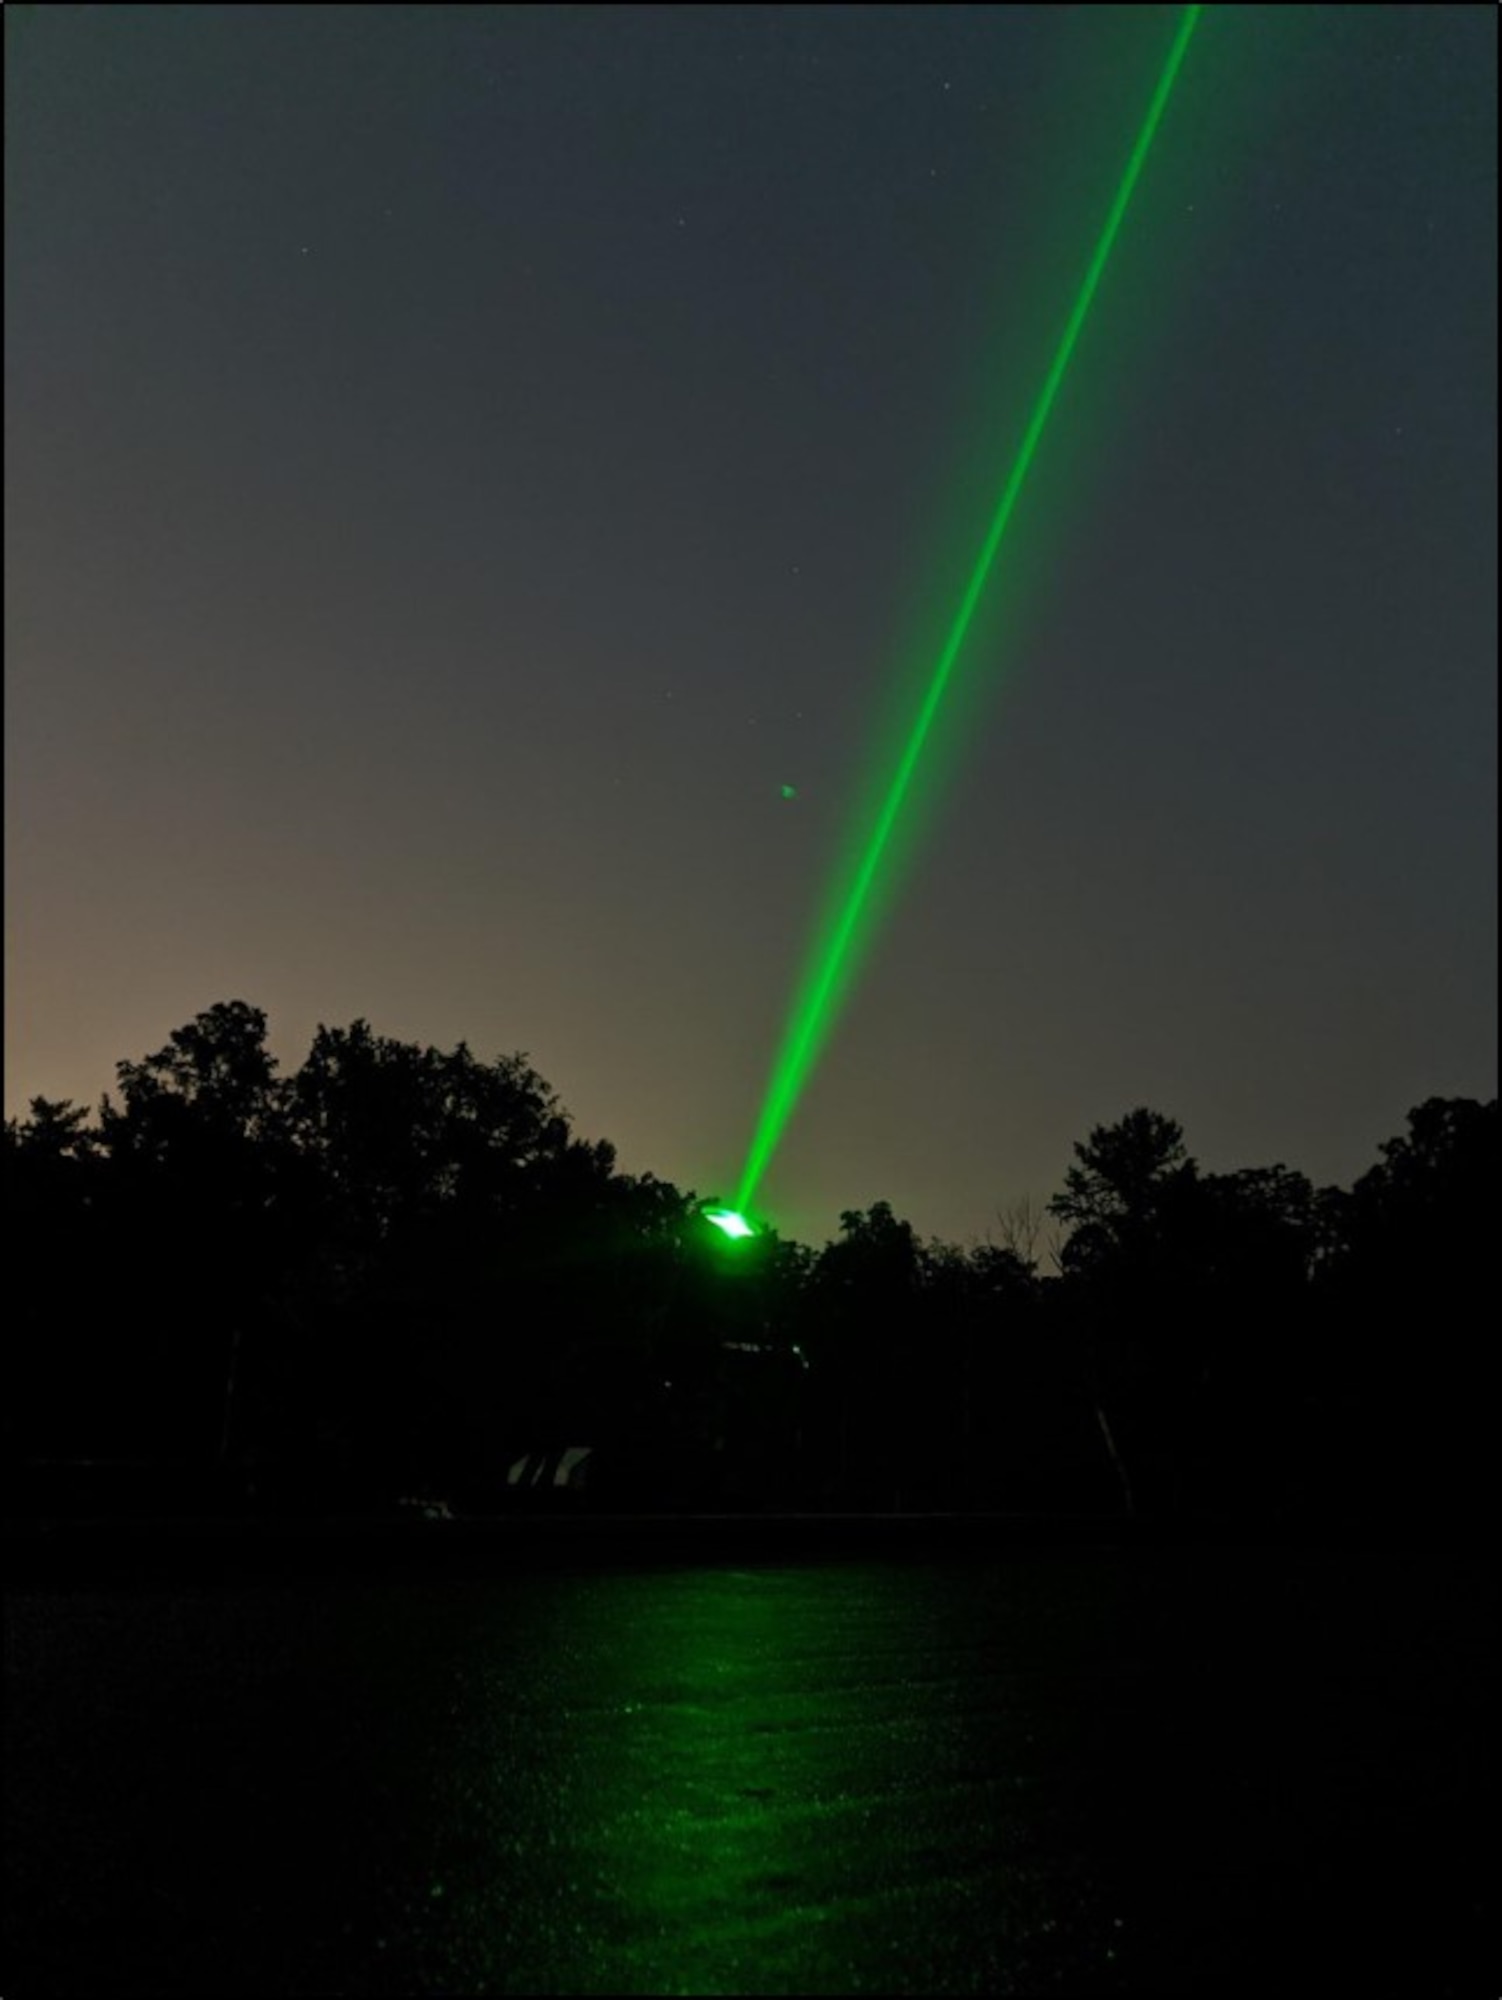 TARDIS laser beam at John Bryan Observatory